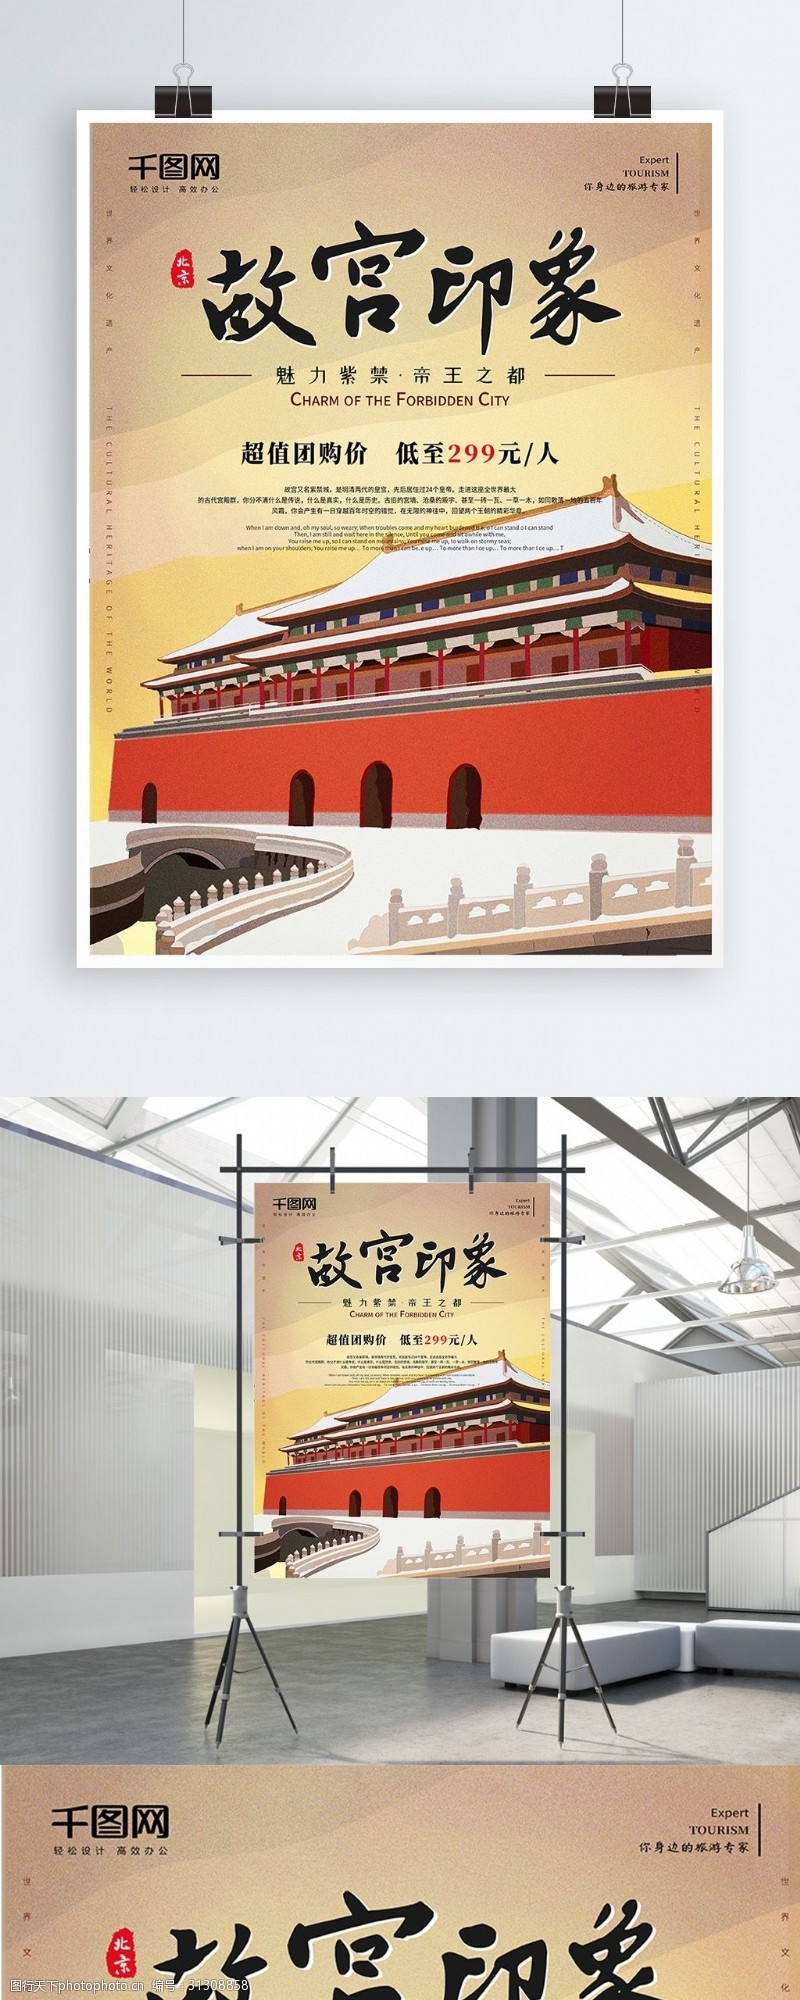 北京旅游海报插画风北京印象故宫旅游海报